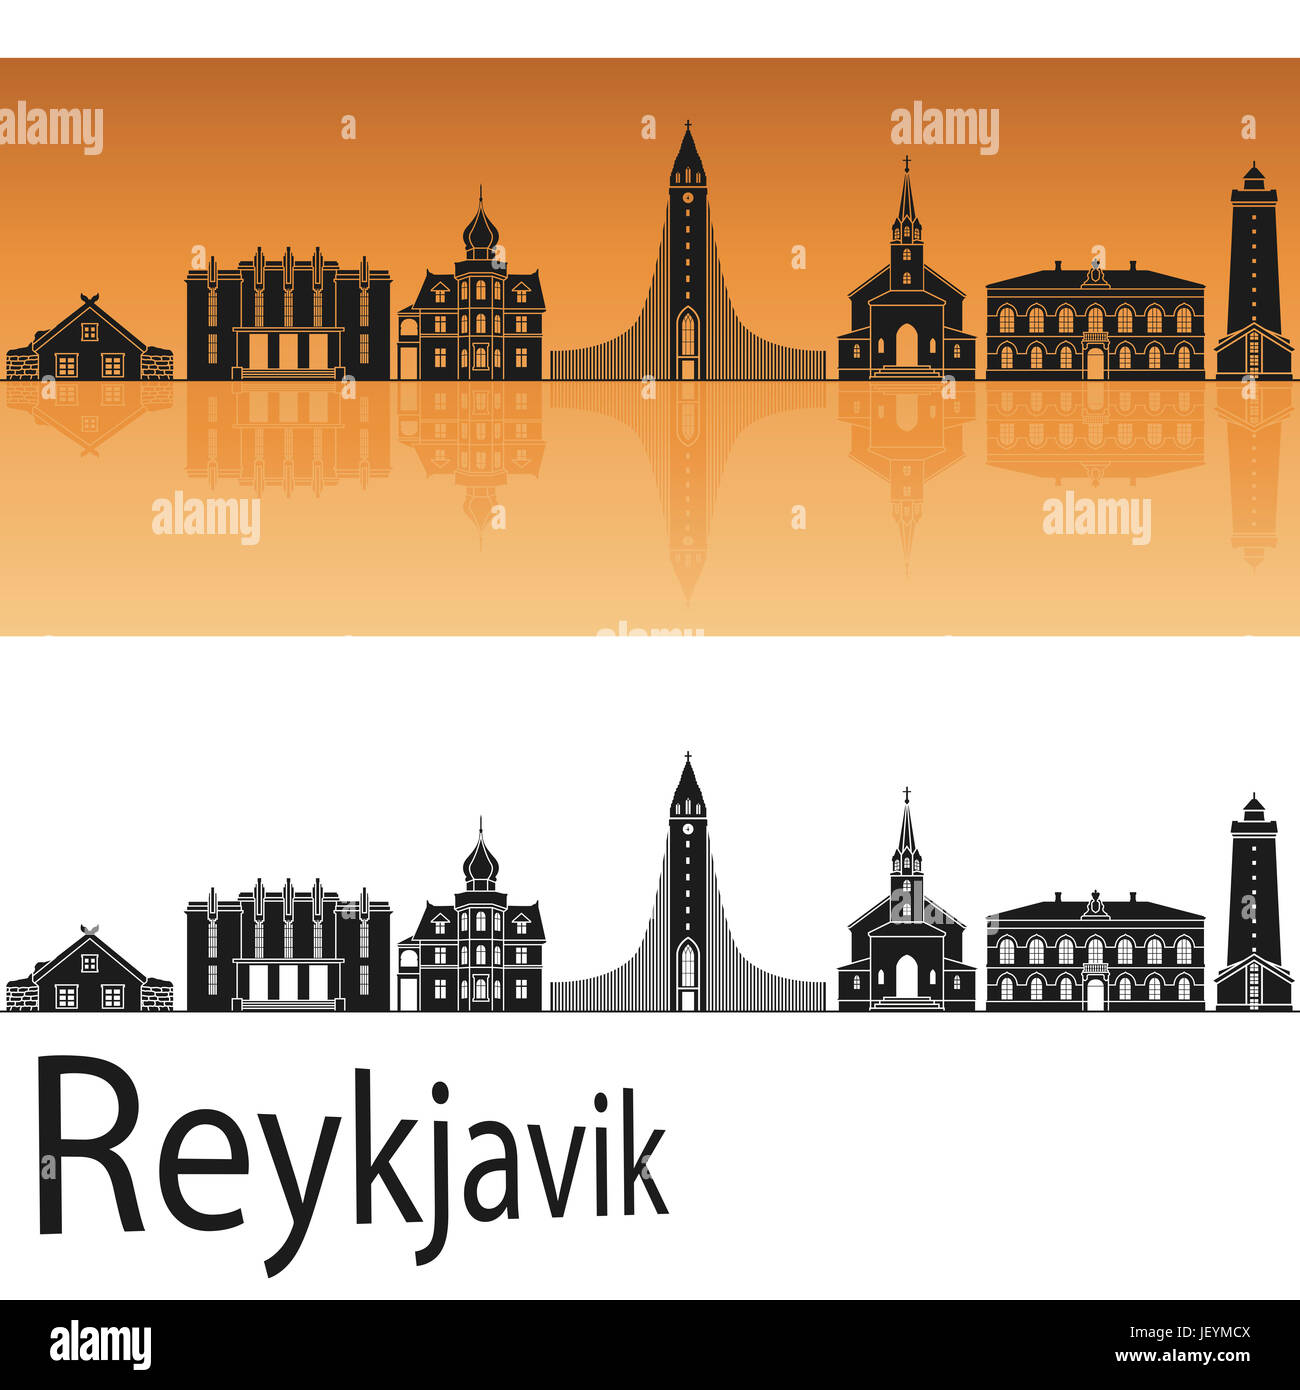 Reykjavik skyline en fond orange en fichier vectoriel éditable Banque D'Images